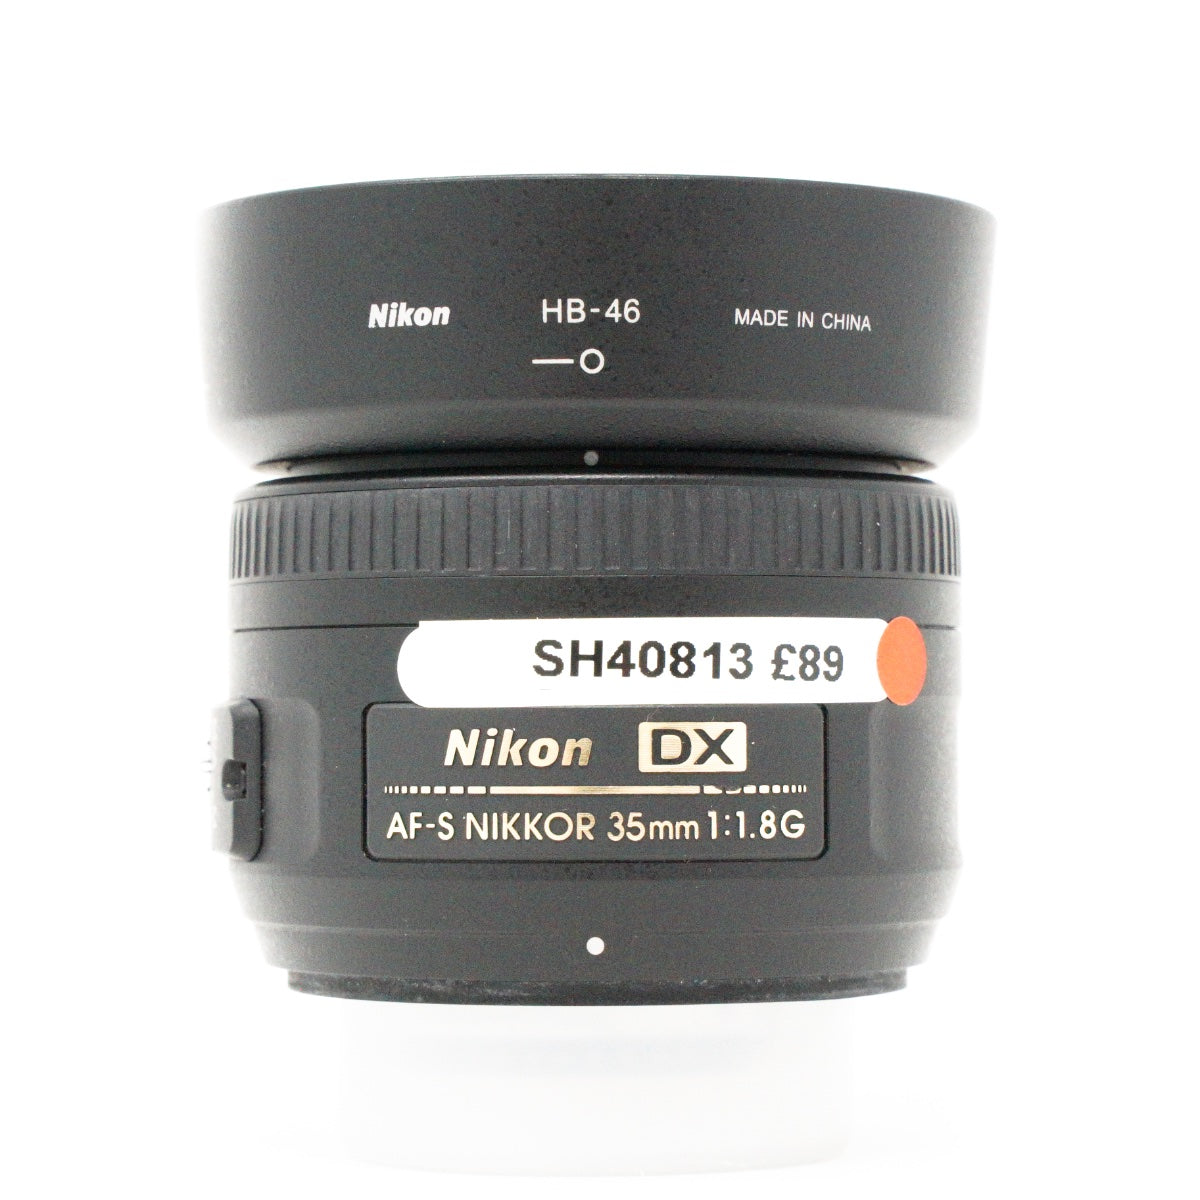 Used Nikon AF-S Nikkor 35mm F/1.8G DX Lens